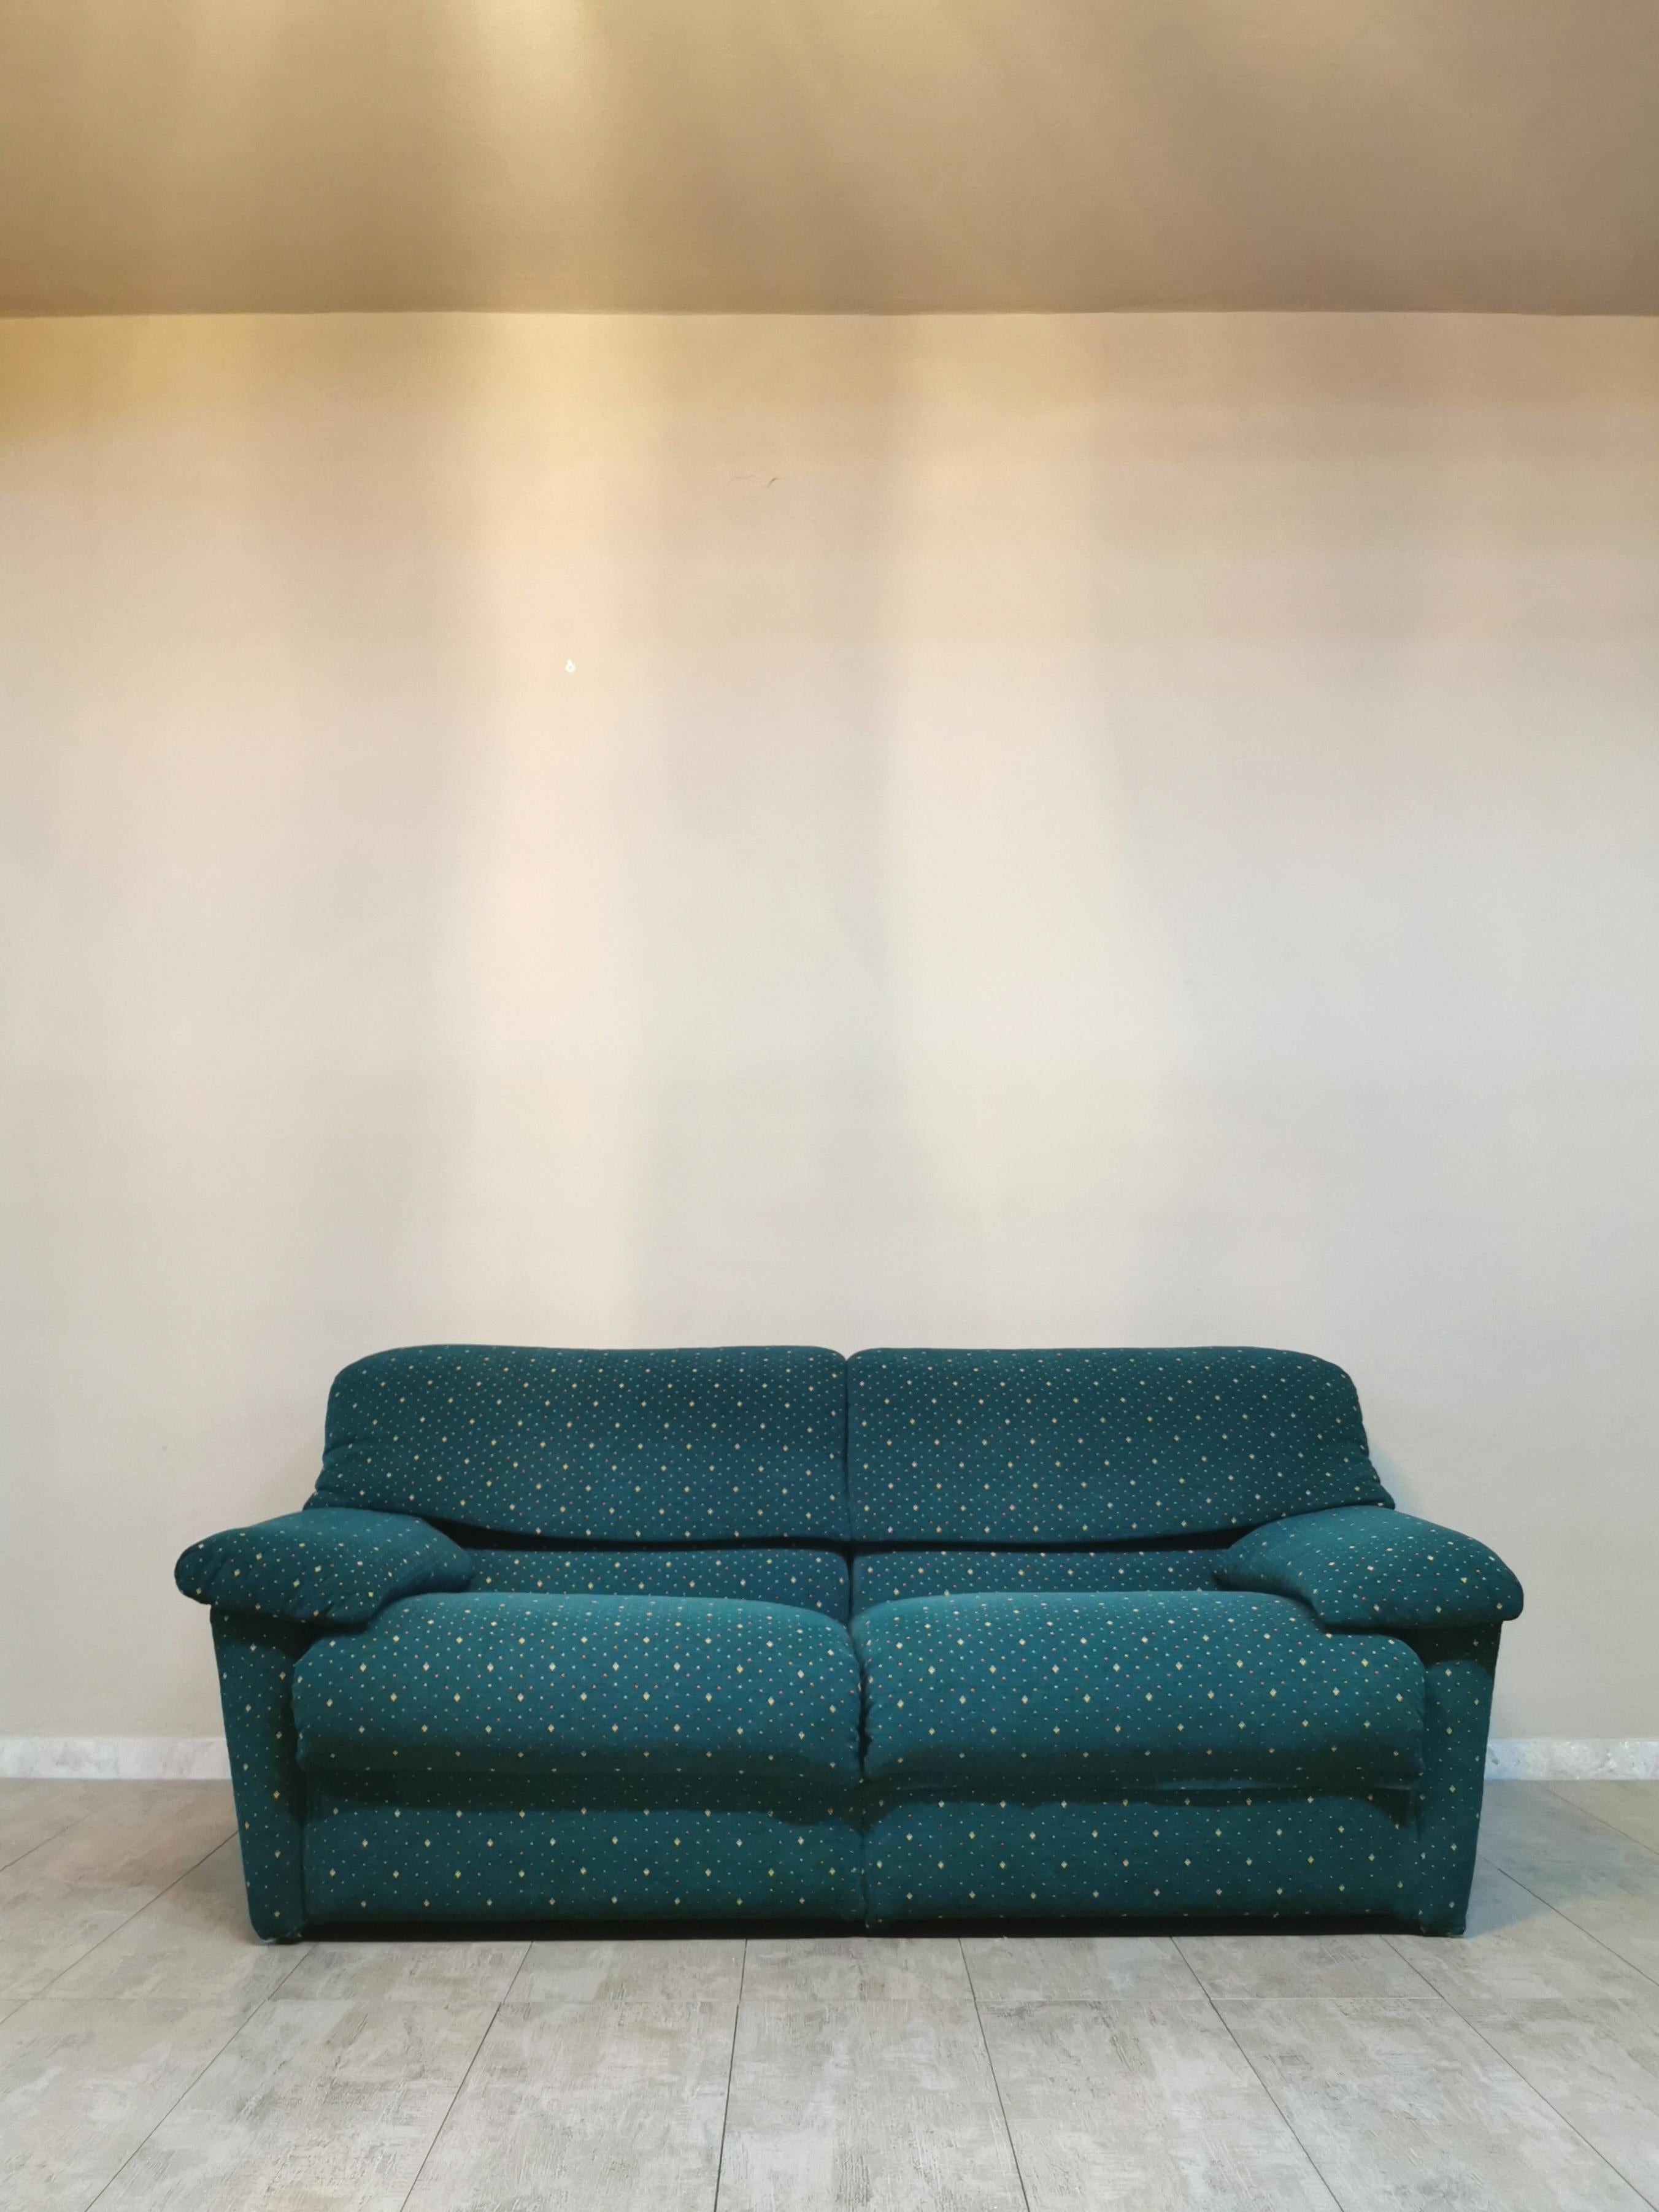 Late 20th Century  Sofa Green Velvet 3 Seat by Pol 74 Postmodern Italian Design 1990s